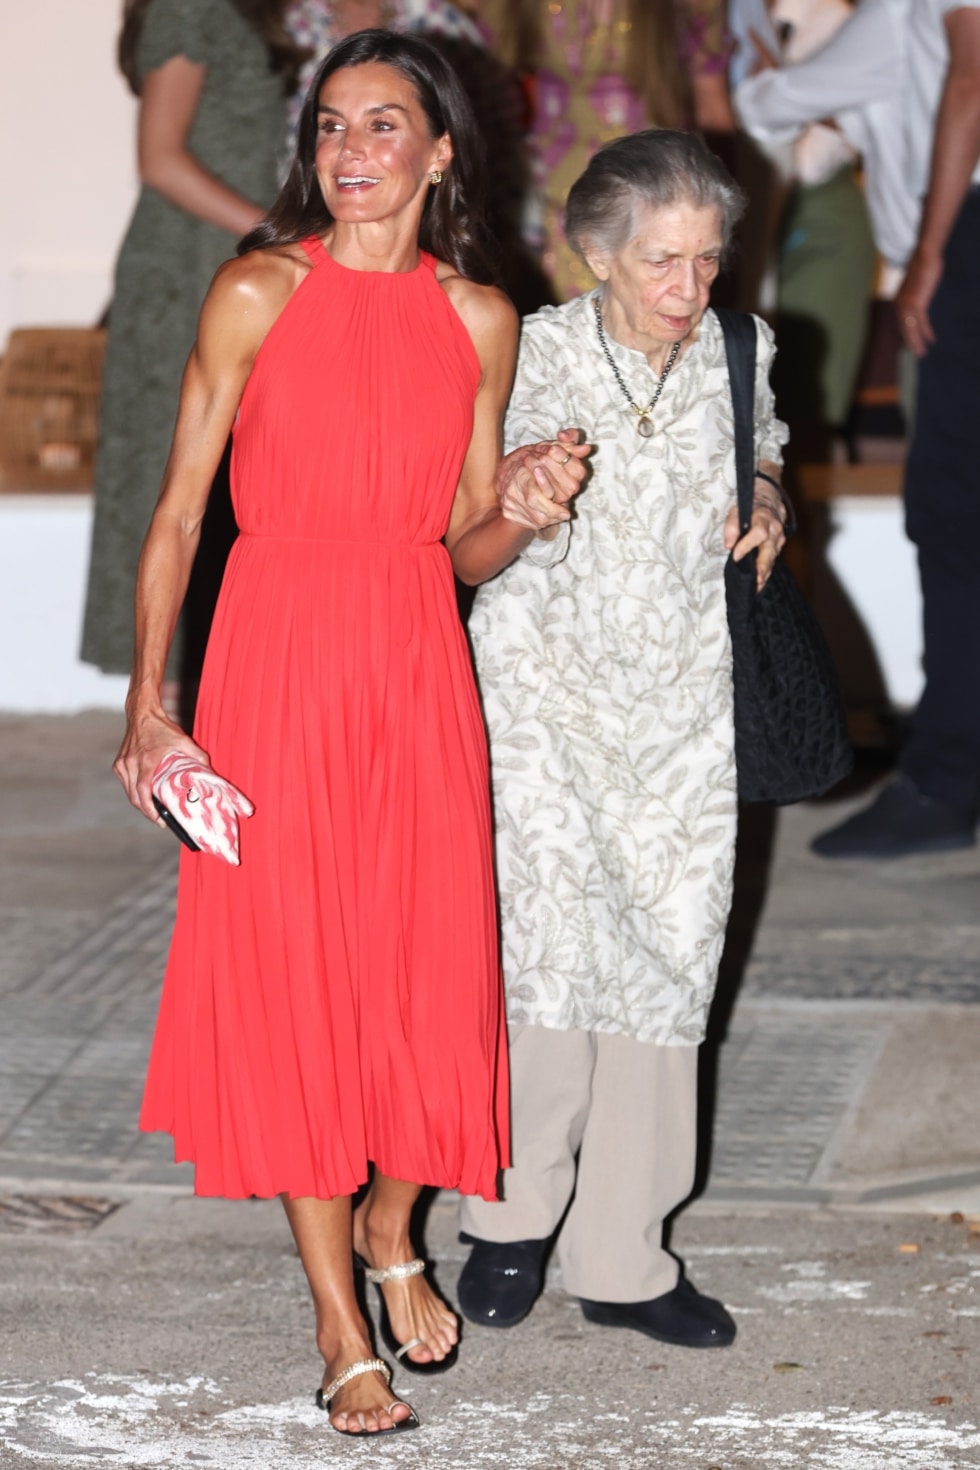 La reina Letizia y la princesa Irene de Grecia salen del restaurante tras cenar en familia